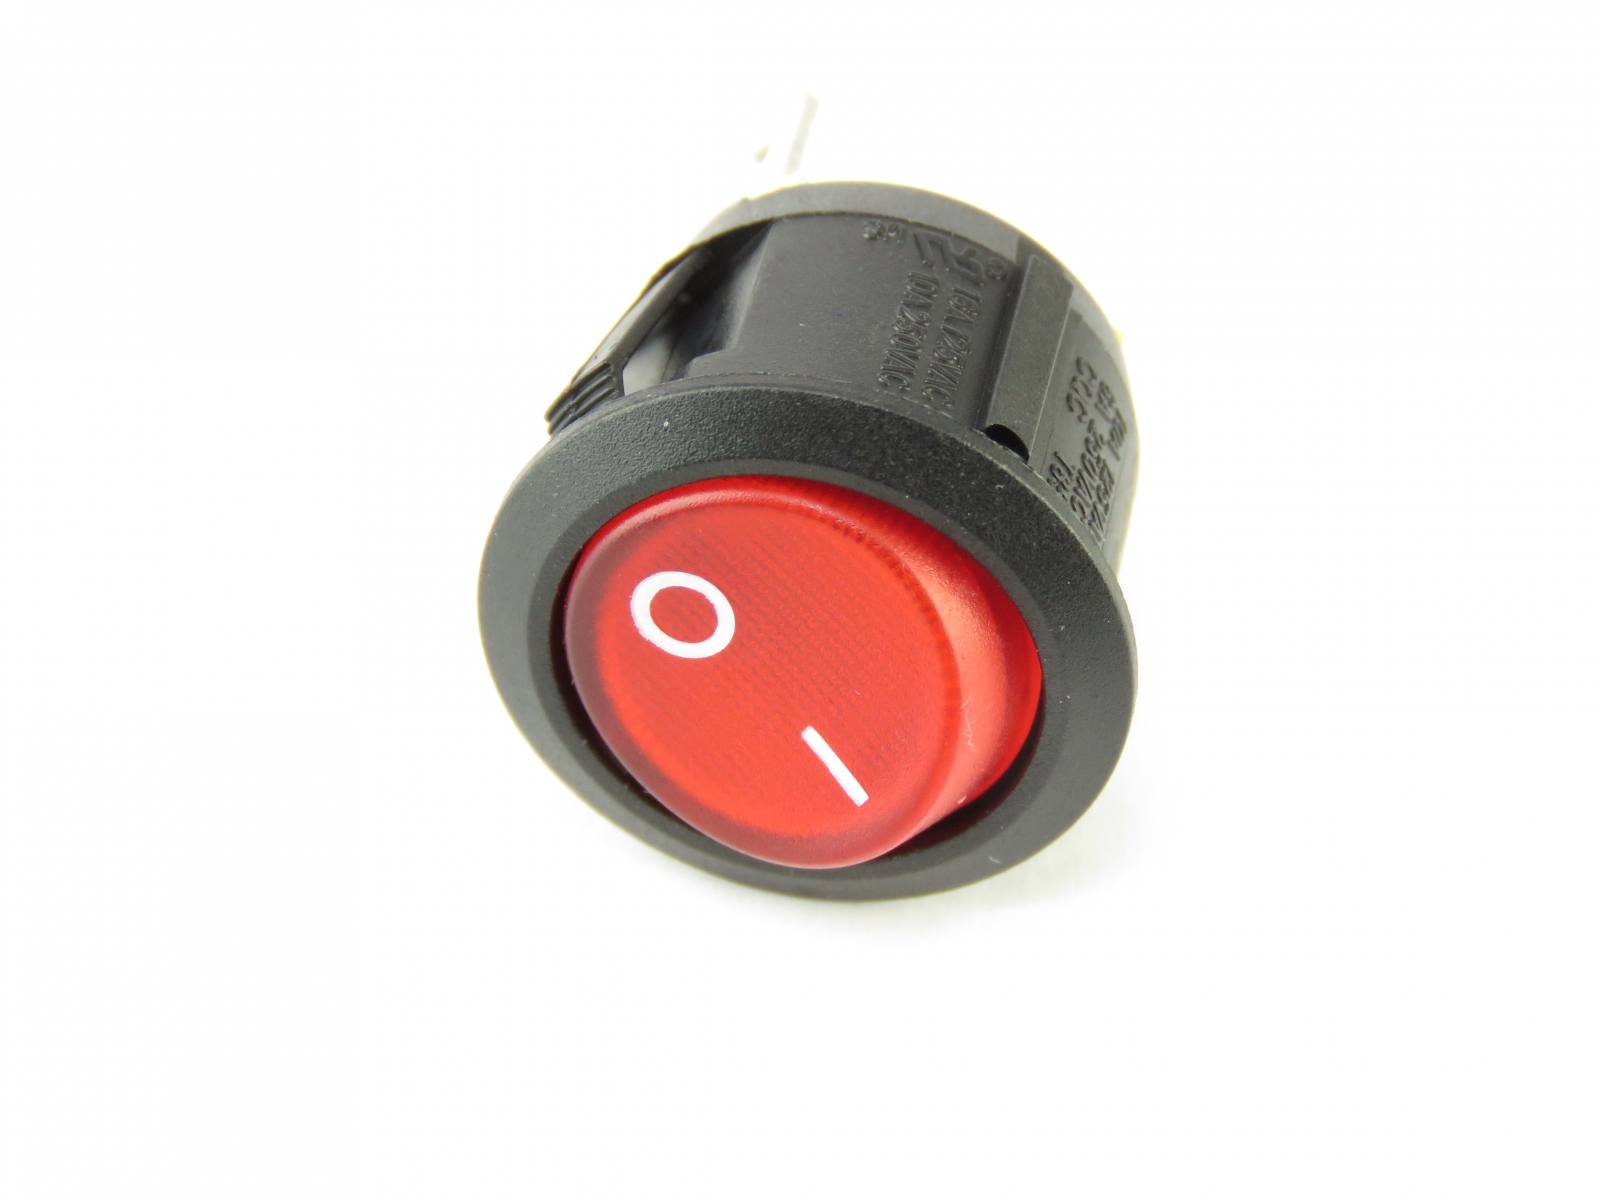 Interrupteur à bascule bipolaire, 250V, On-Off, lumineux rouge